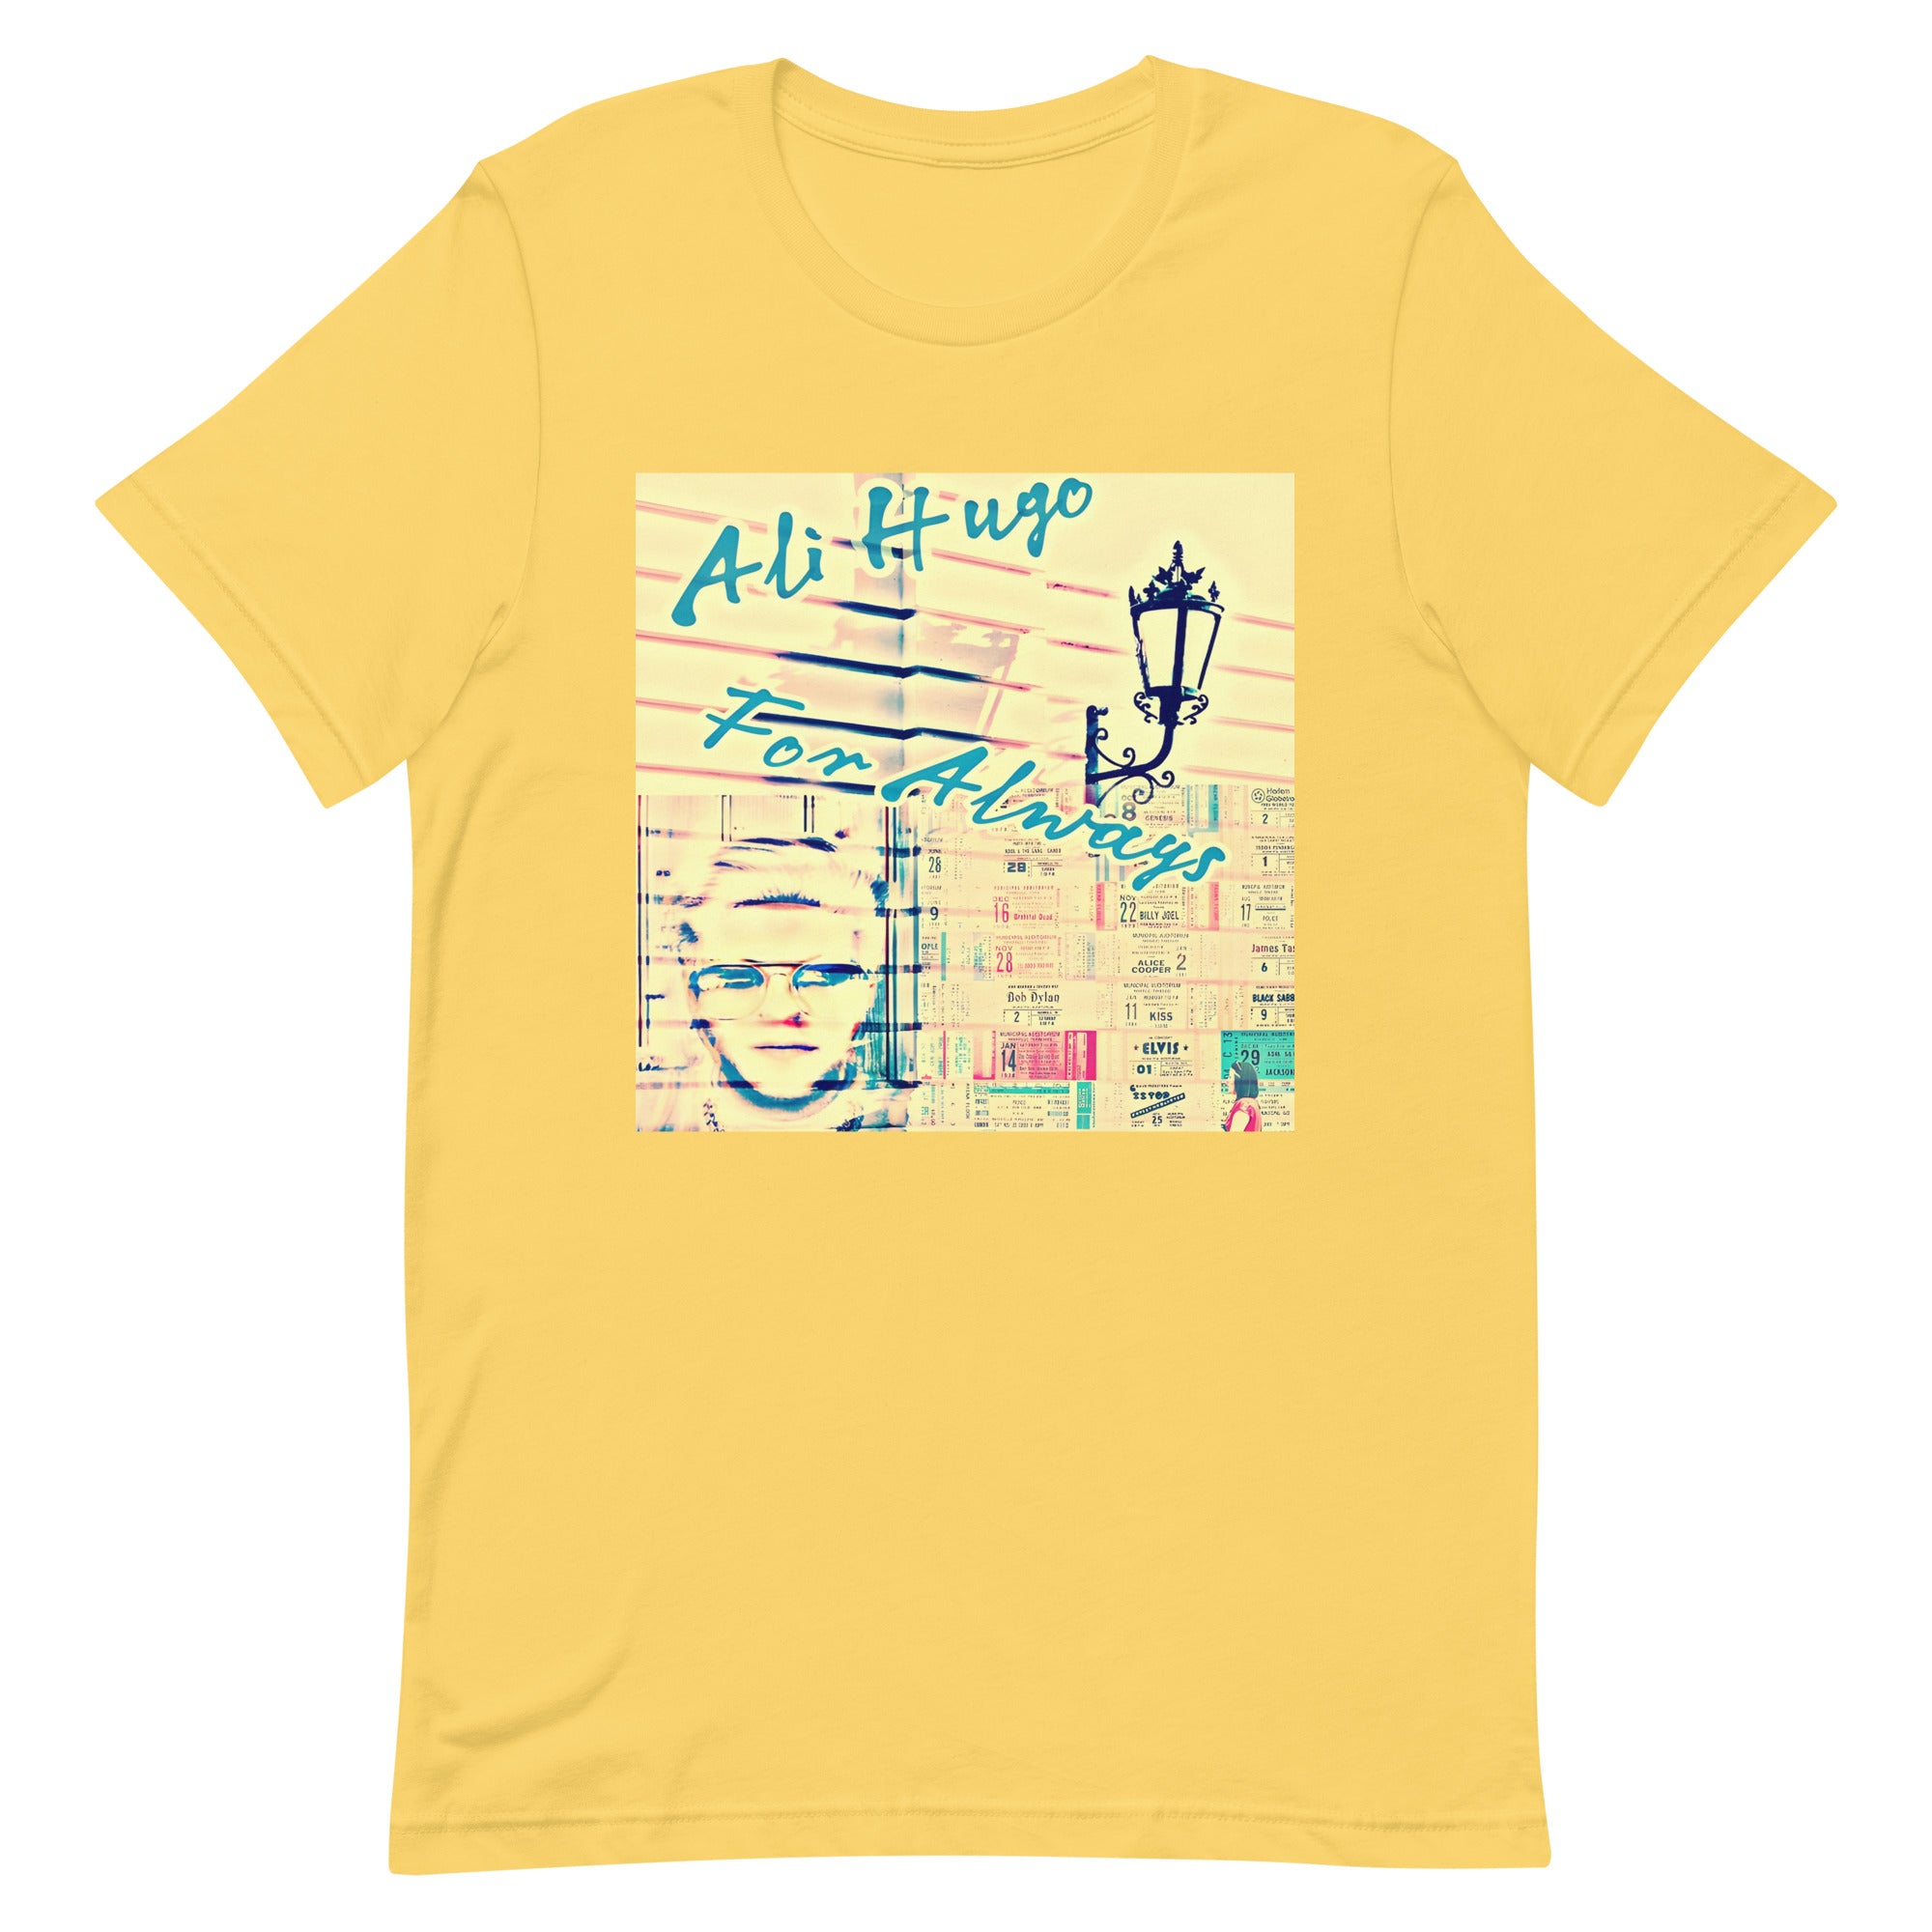 Ali Hugo - "For Always - Unisex t-shirt